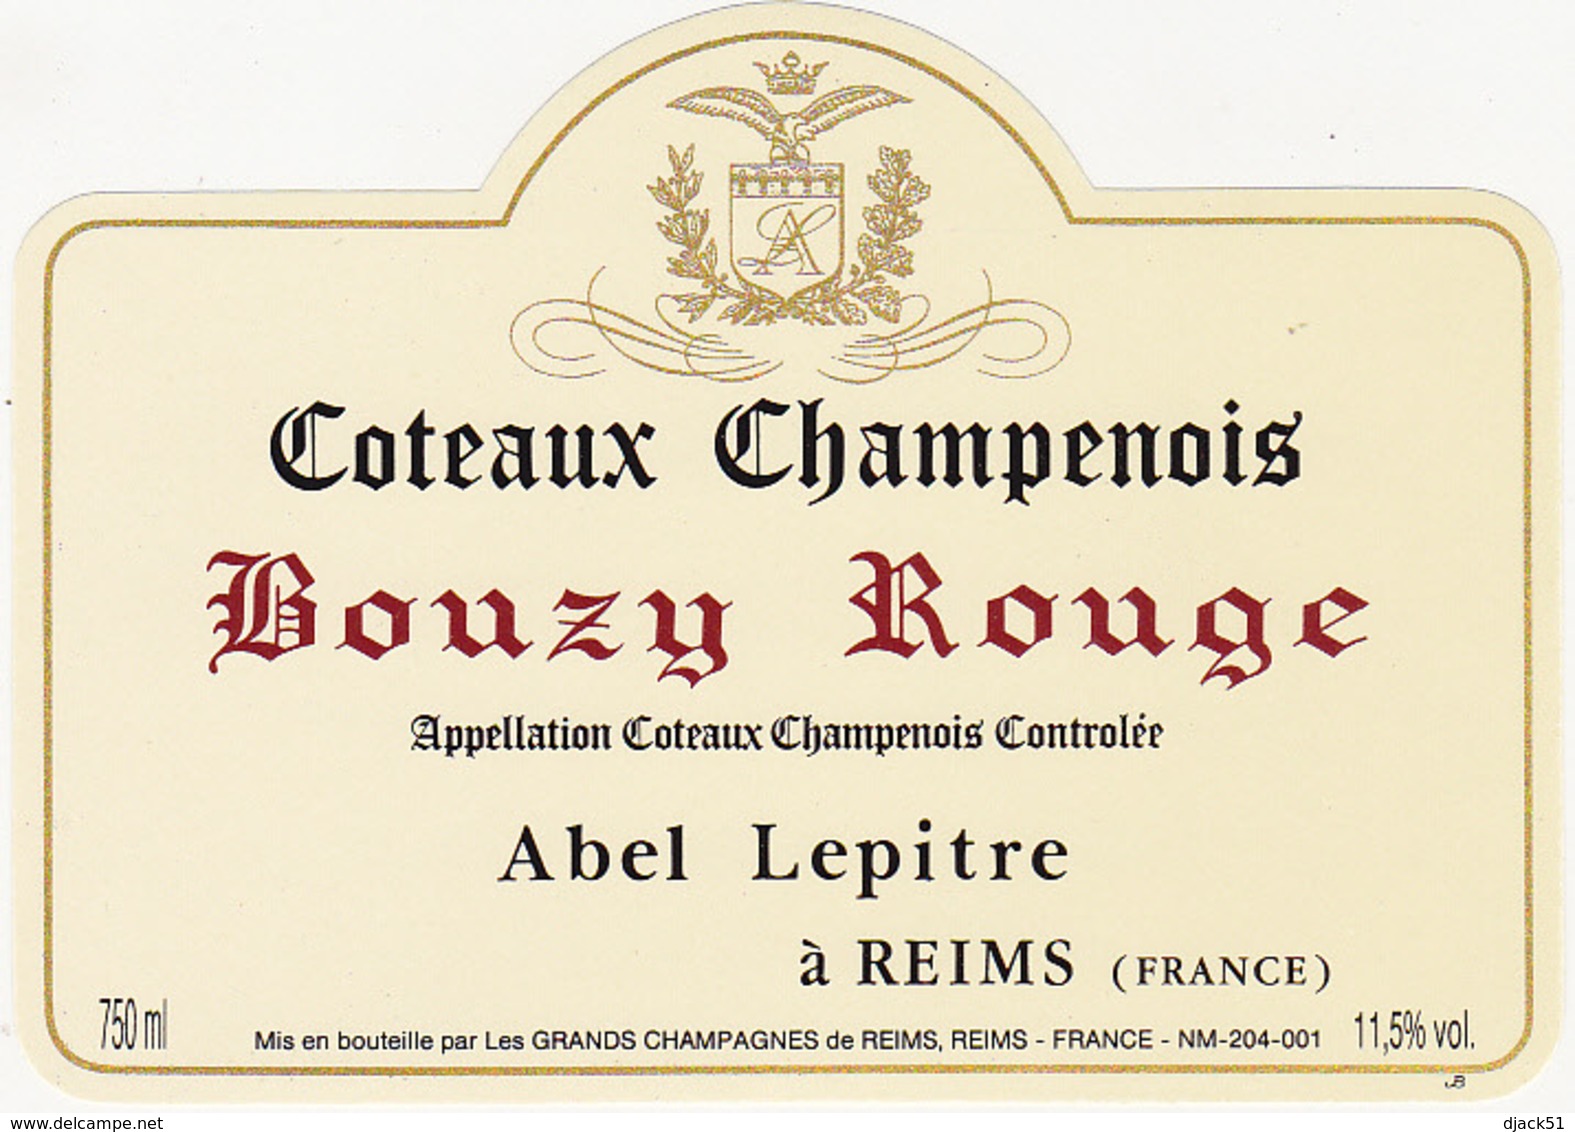 Coteaux Champenois là gì? Coteaux Champenois: loại rượu khác từ Champagne mà bạn có thể chưa bao giờ nghe nói đến